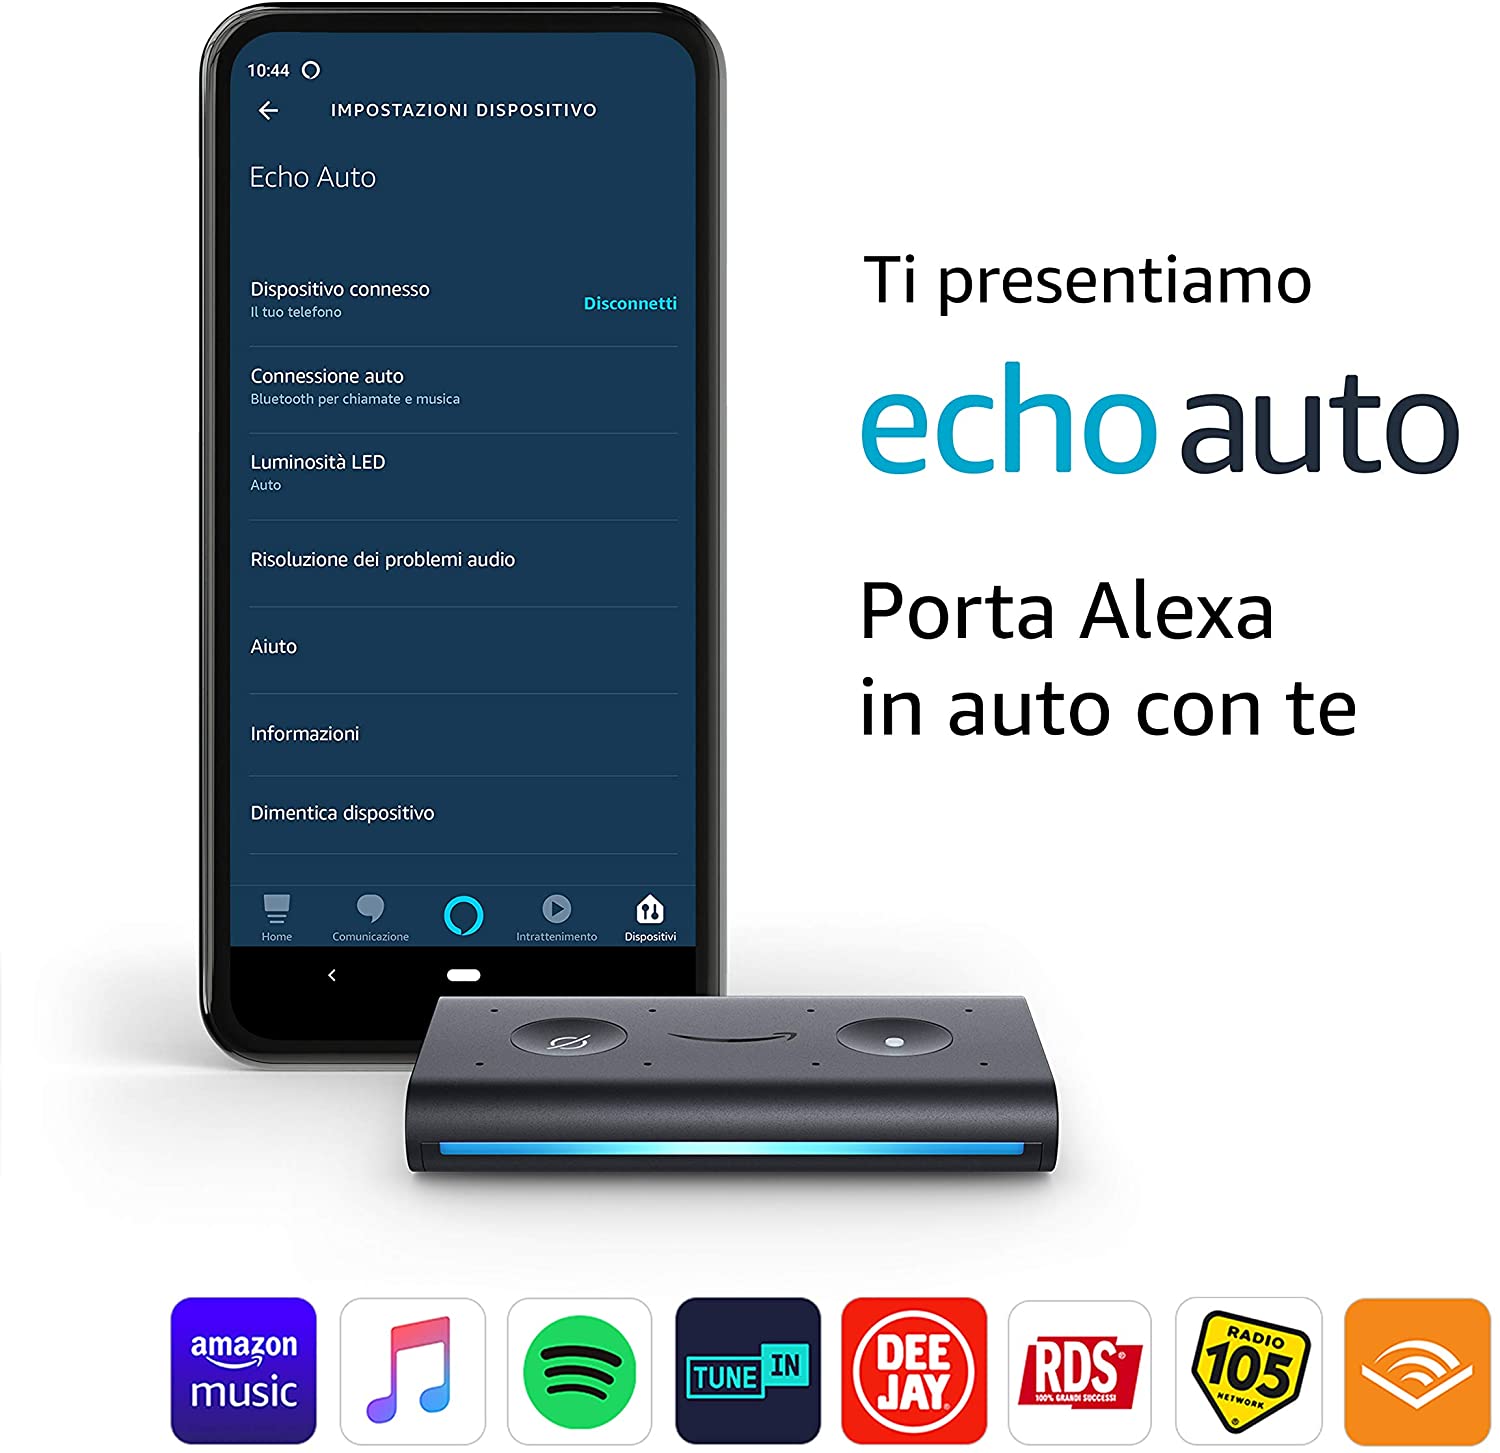 Echo Auto - Porta Alexa in auto con te